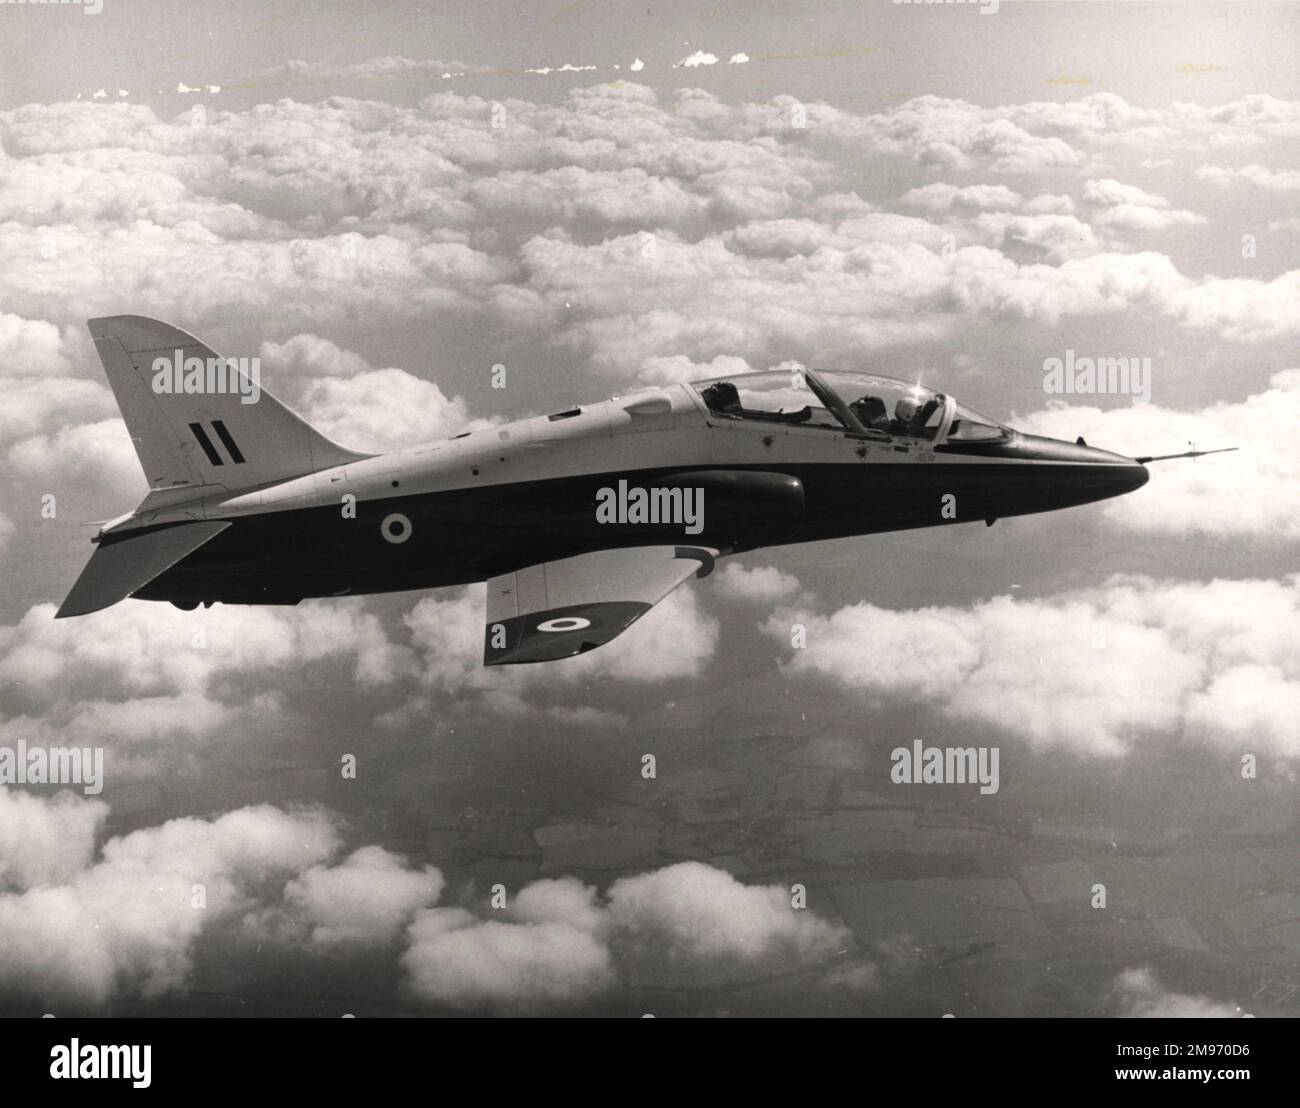 Der erste Hawk, XX154, ist am 21. August 1974 zum ersten Mal in der Luft, mit dem Chefpiloten Duncan Simpson an der Kontrolle. Der Flug vom Flugtestzentrum Dunsfold dauerte 53 Minuten. Stockfoto